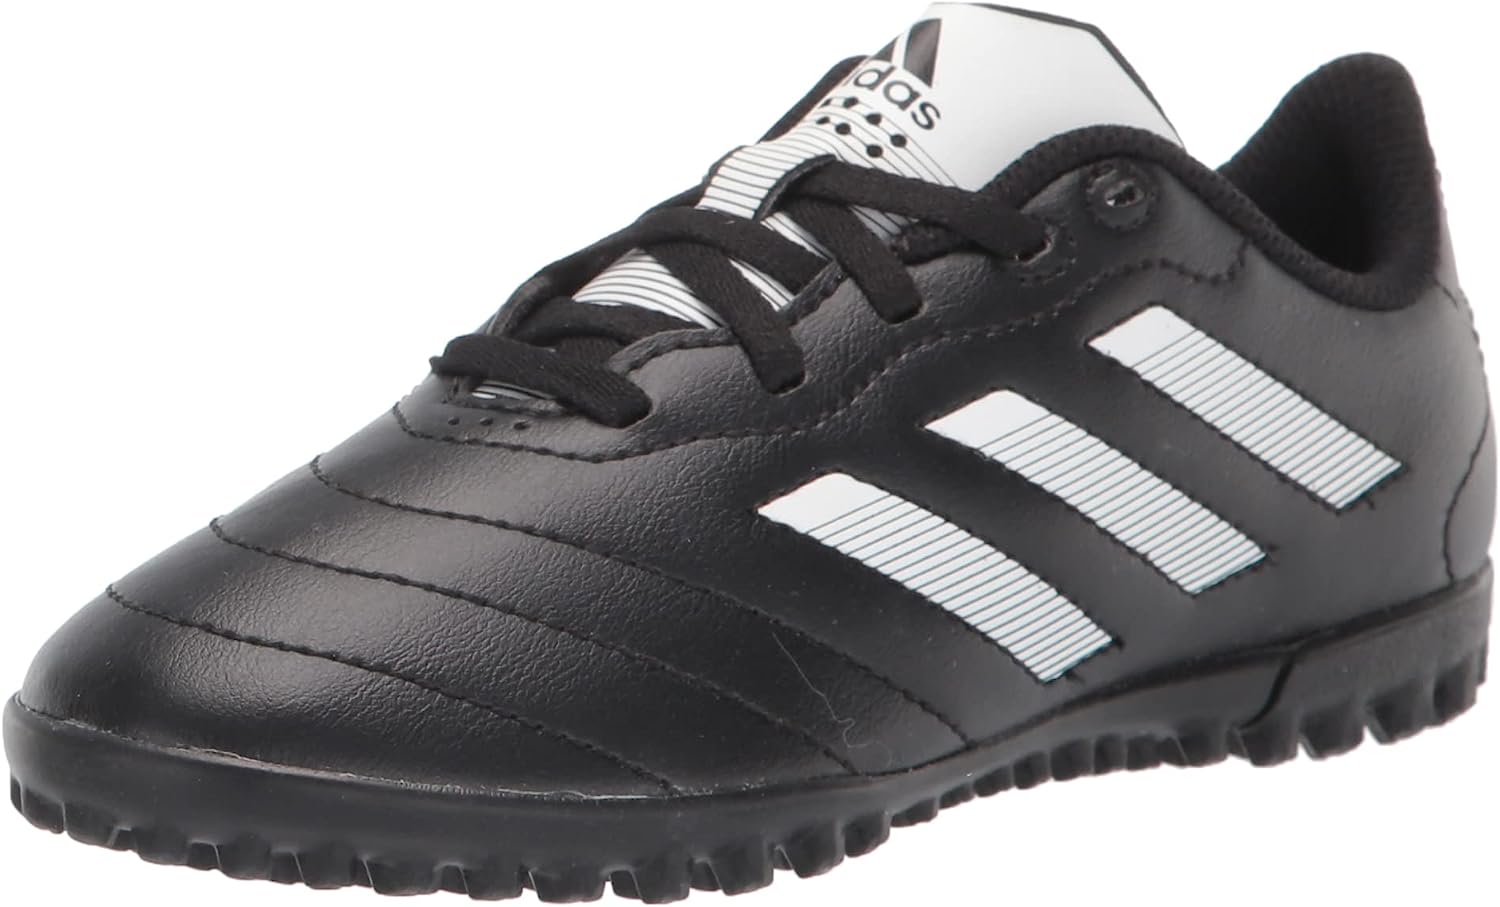 adidas Unisex-Child Goletto VIII Turf Soccer Shoe